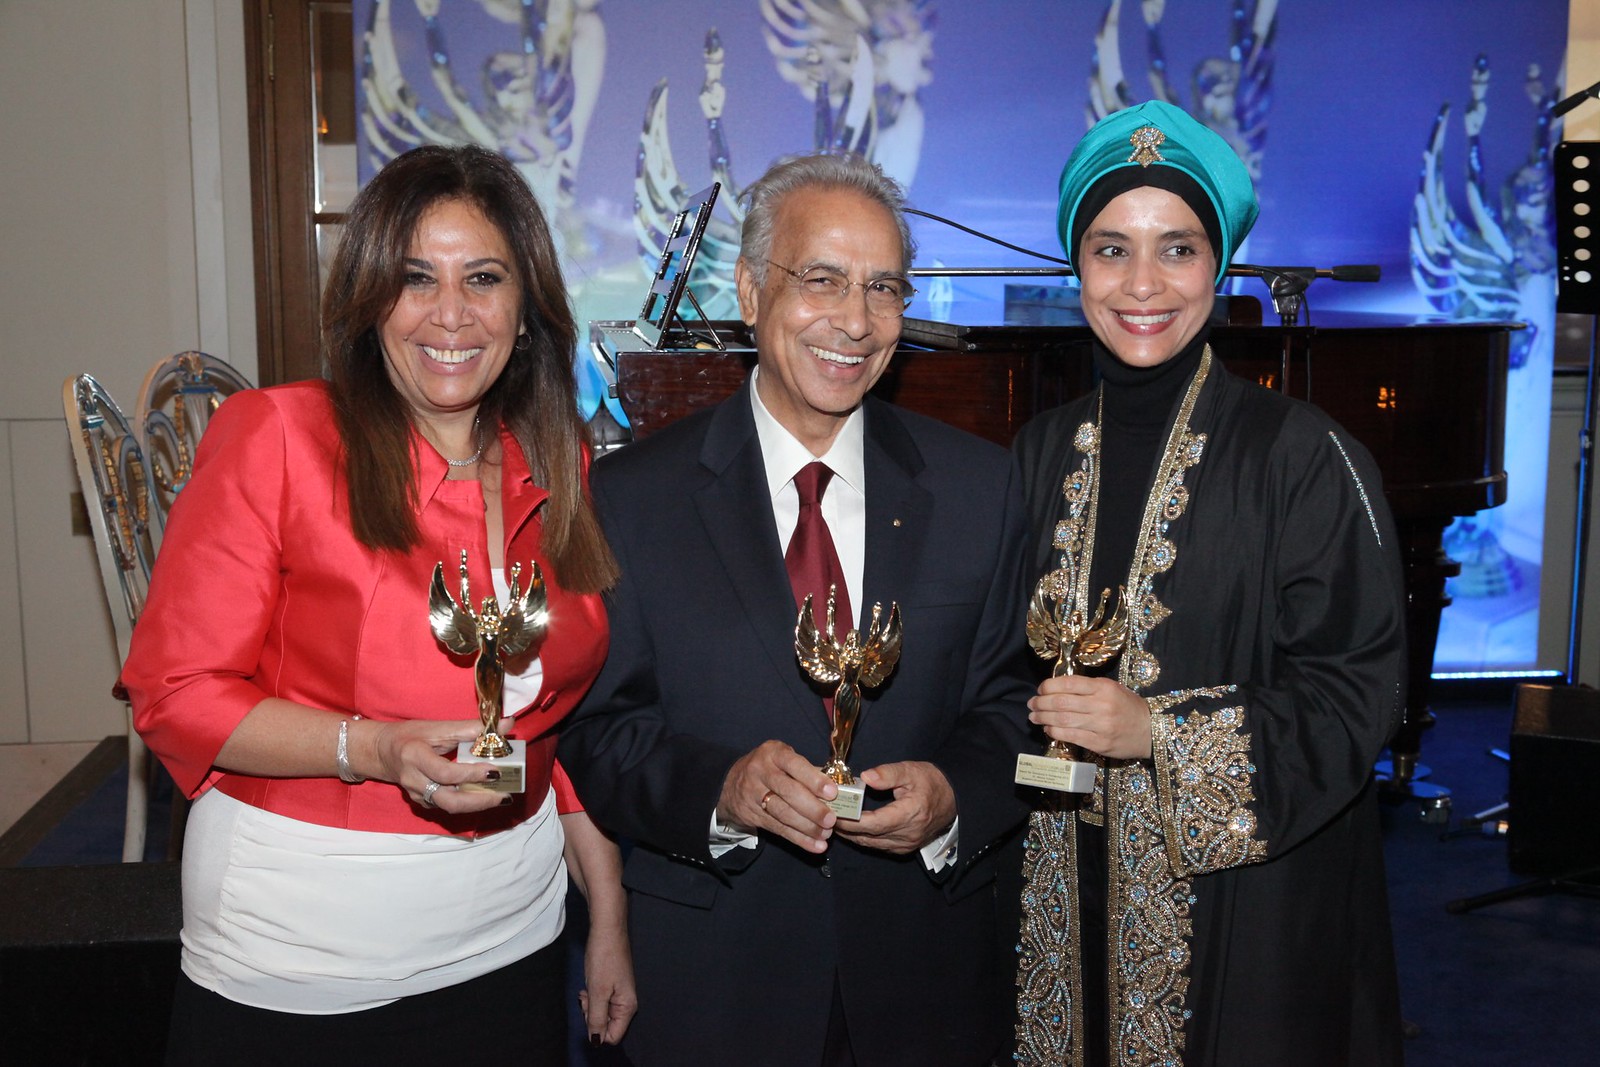 Shahira Amin, Dr Ibrahim Abouleish, Dr Maisah Sobaihi